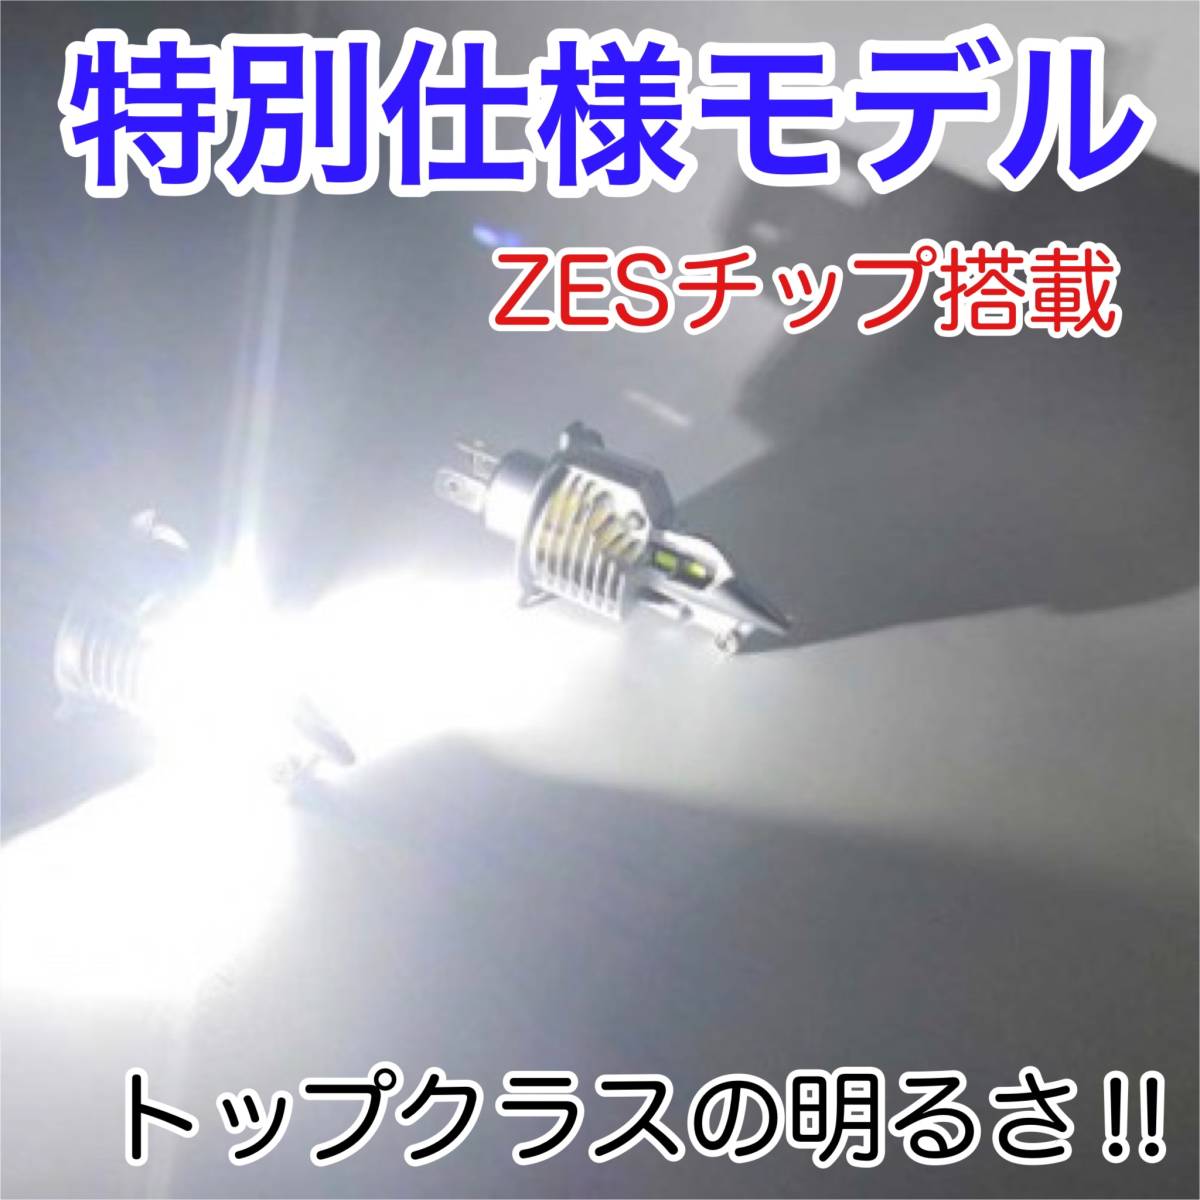 KAWASAKI カワサキ ZZR1200 2002-2005 ZXT20C LEDヘッドライト H4 Hi/Lo バルブ バイク用 1灯 S25 テールランプ2個 ホワイト 交換用_画像2